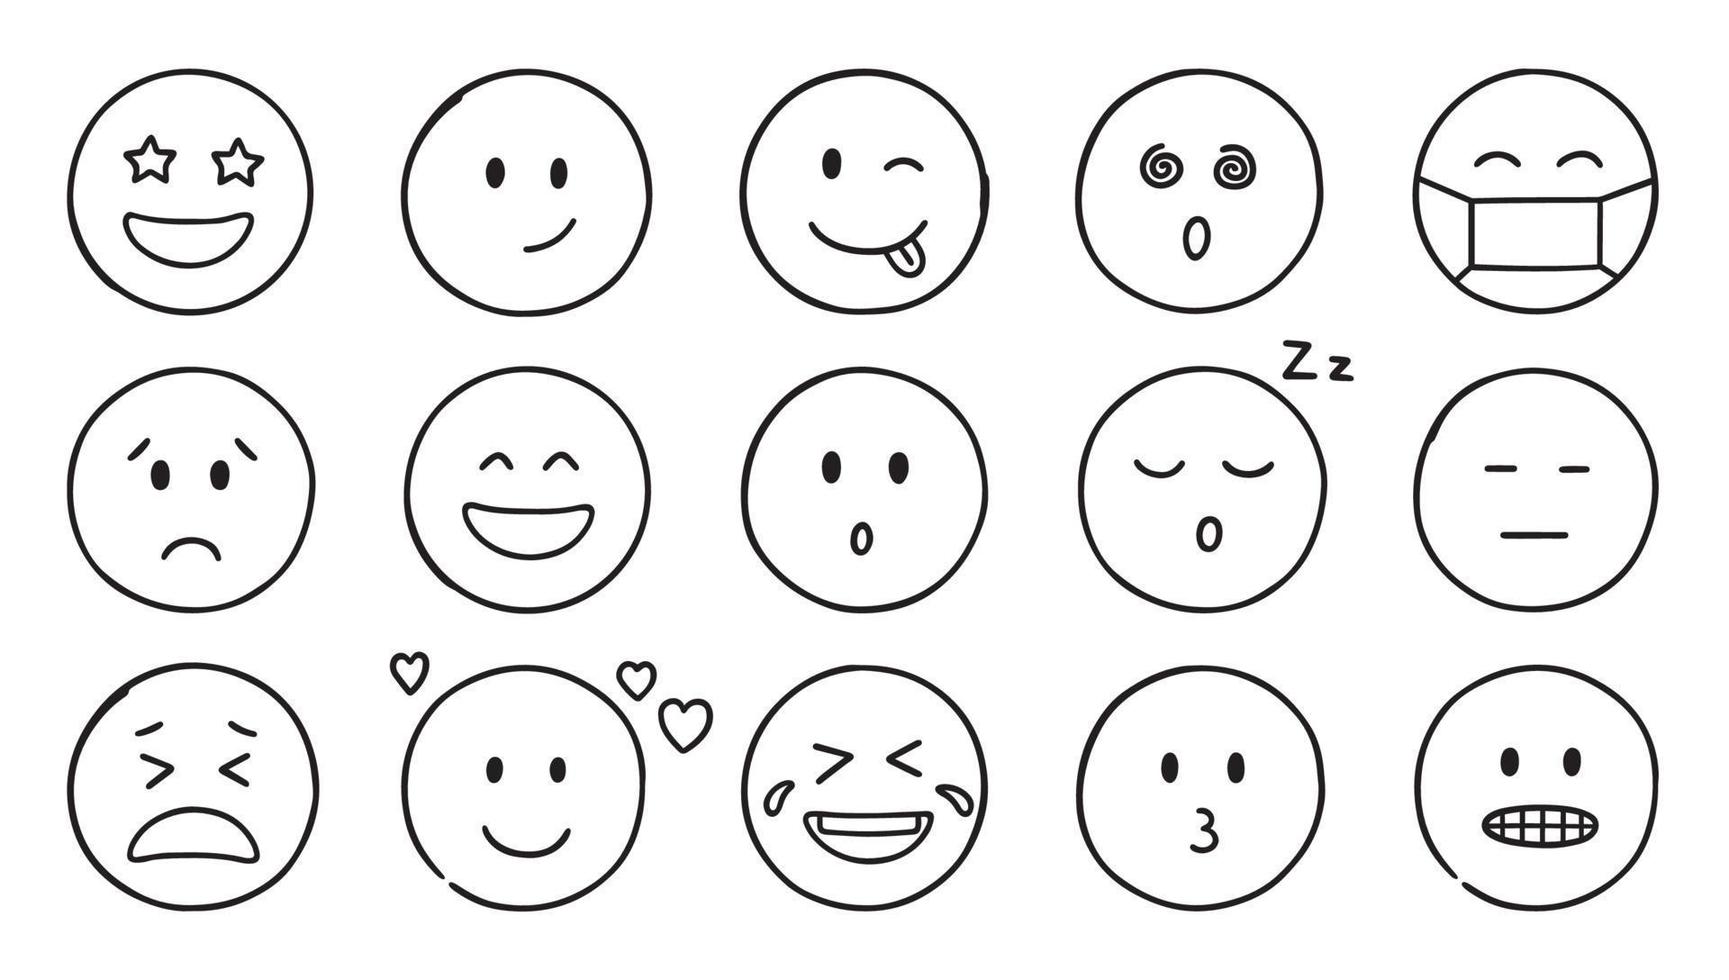 icônes de doodle emoji. ensemble de visages heureux, tristes et souriants. émoticônes drôles dans le style de croquis. illustration de vecteur dessiné à la main isolé sur fond blanc